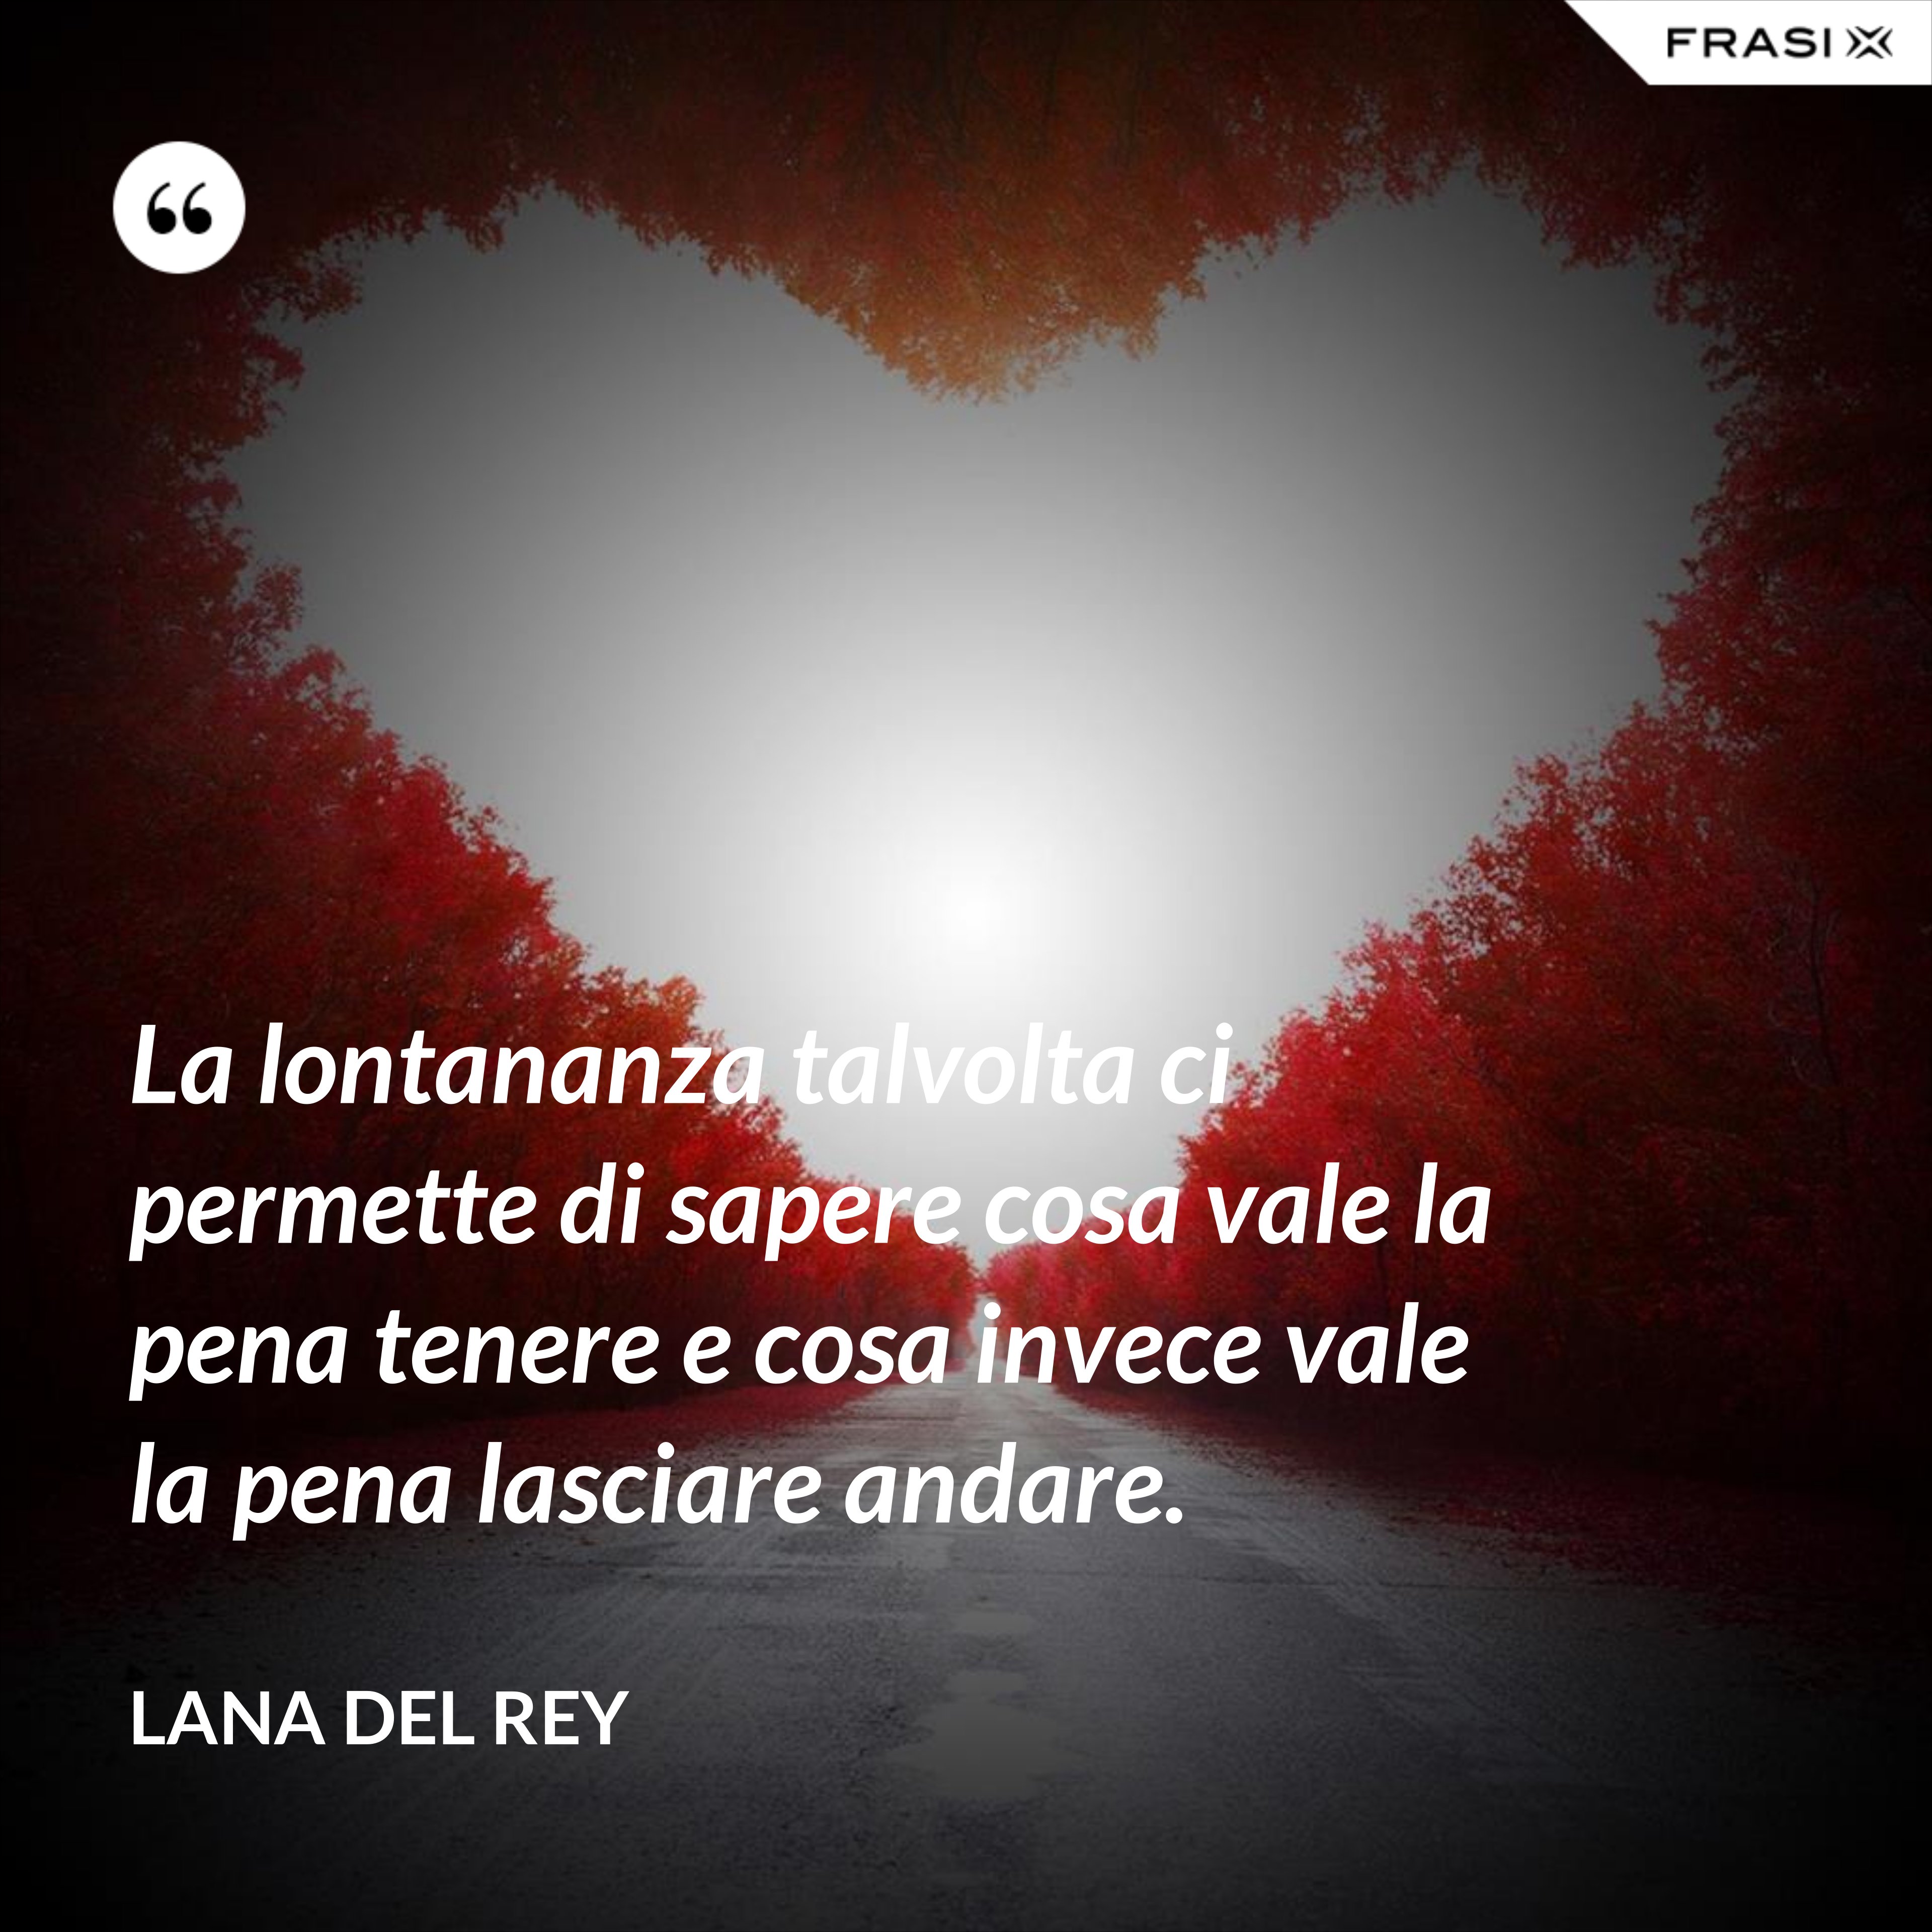 La lontananza talvolta ci permette di sapere cosa vale la pena tenere e cosa invece vale la pena lasciare andare. - Lana Del Rey